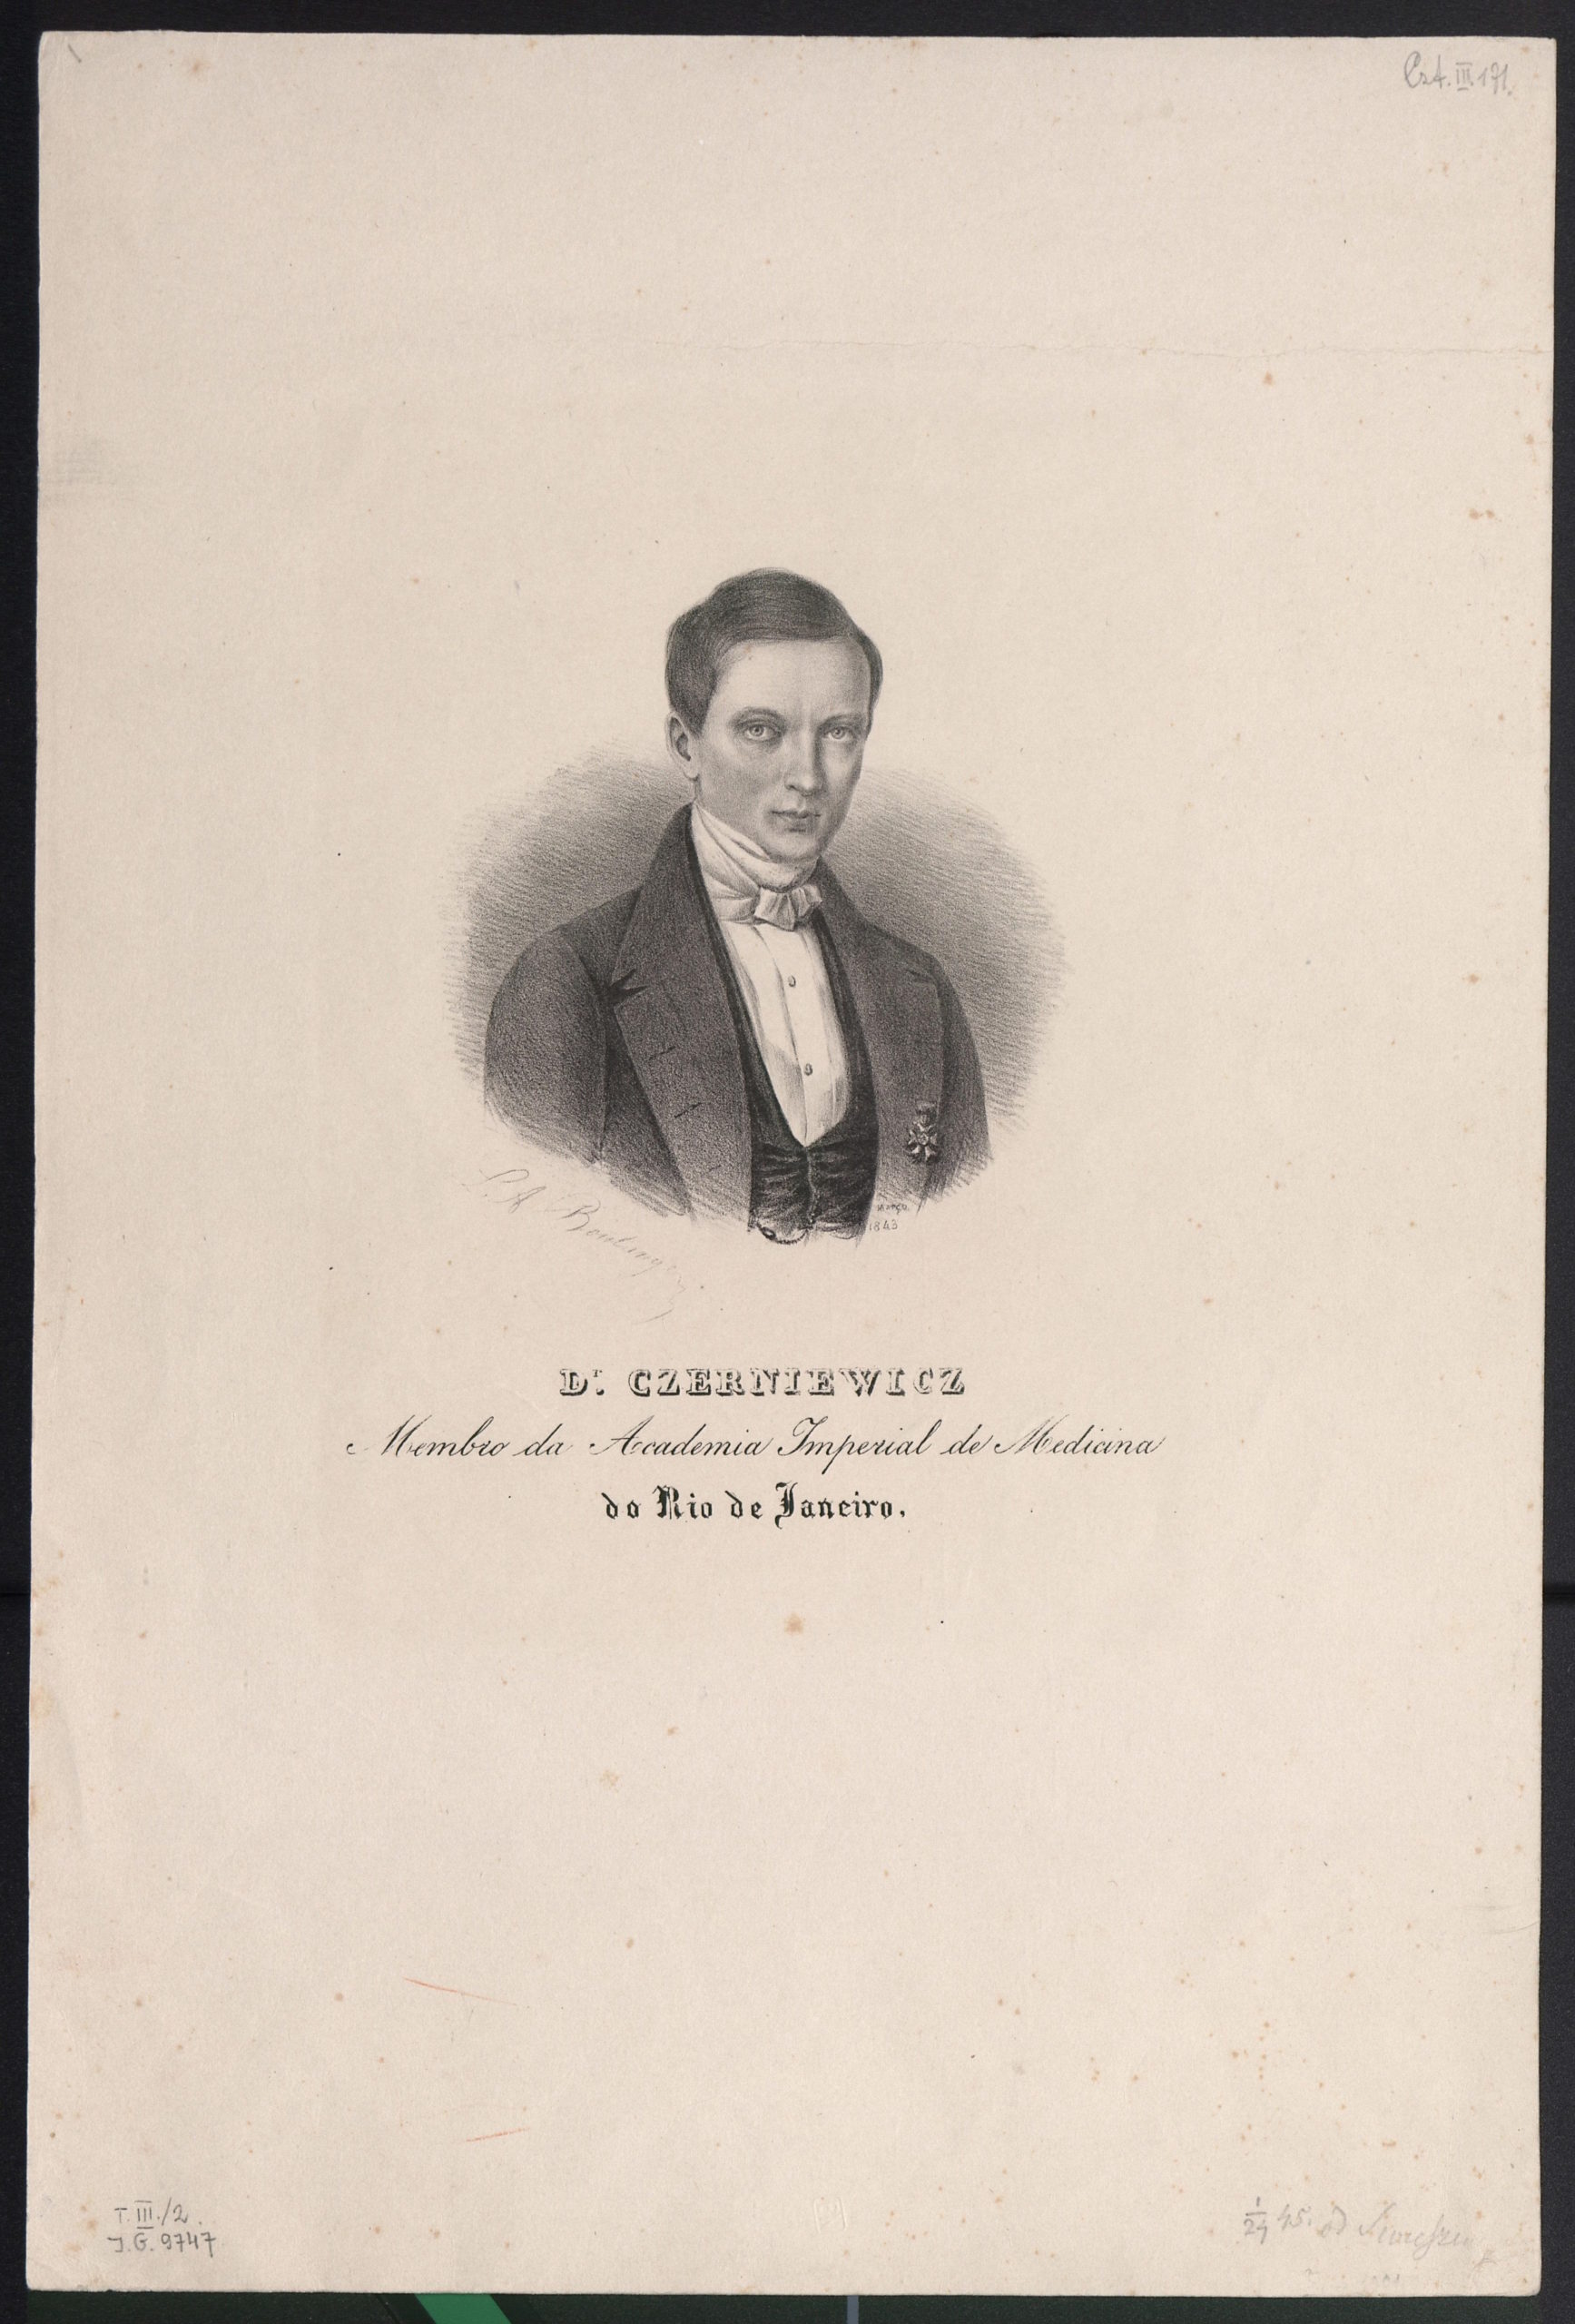 Doktor Piotr Czerniewicz, członek Cesarskiej Akademii Medycznej w Rio de Janeiro. Rycina z 1843 roku. Źródło: Polona